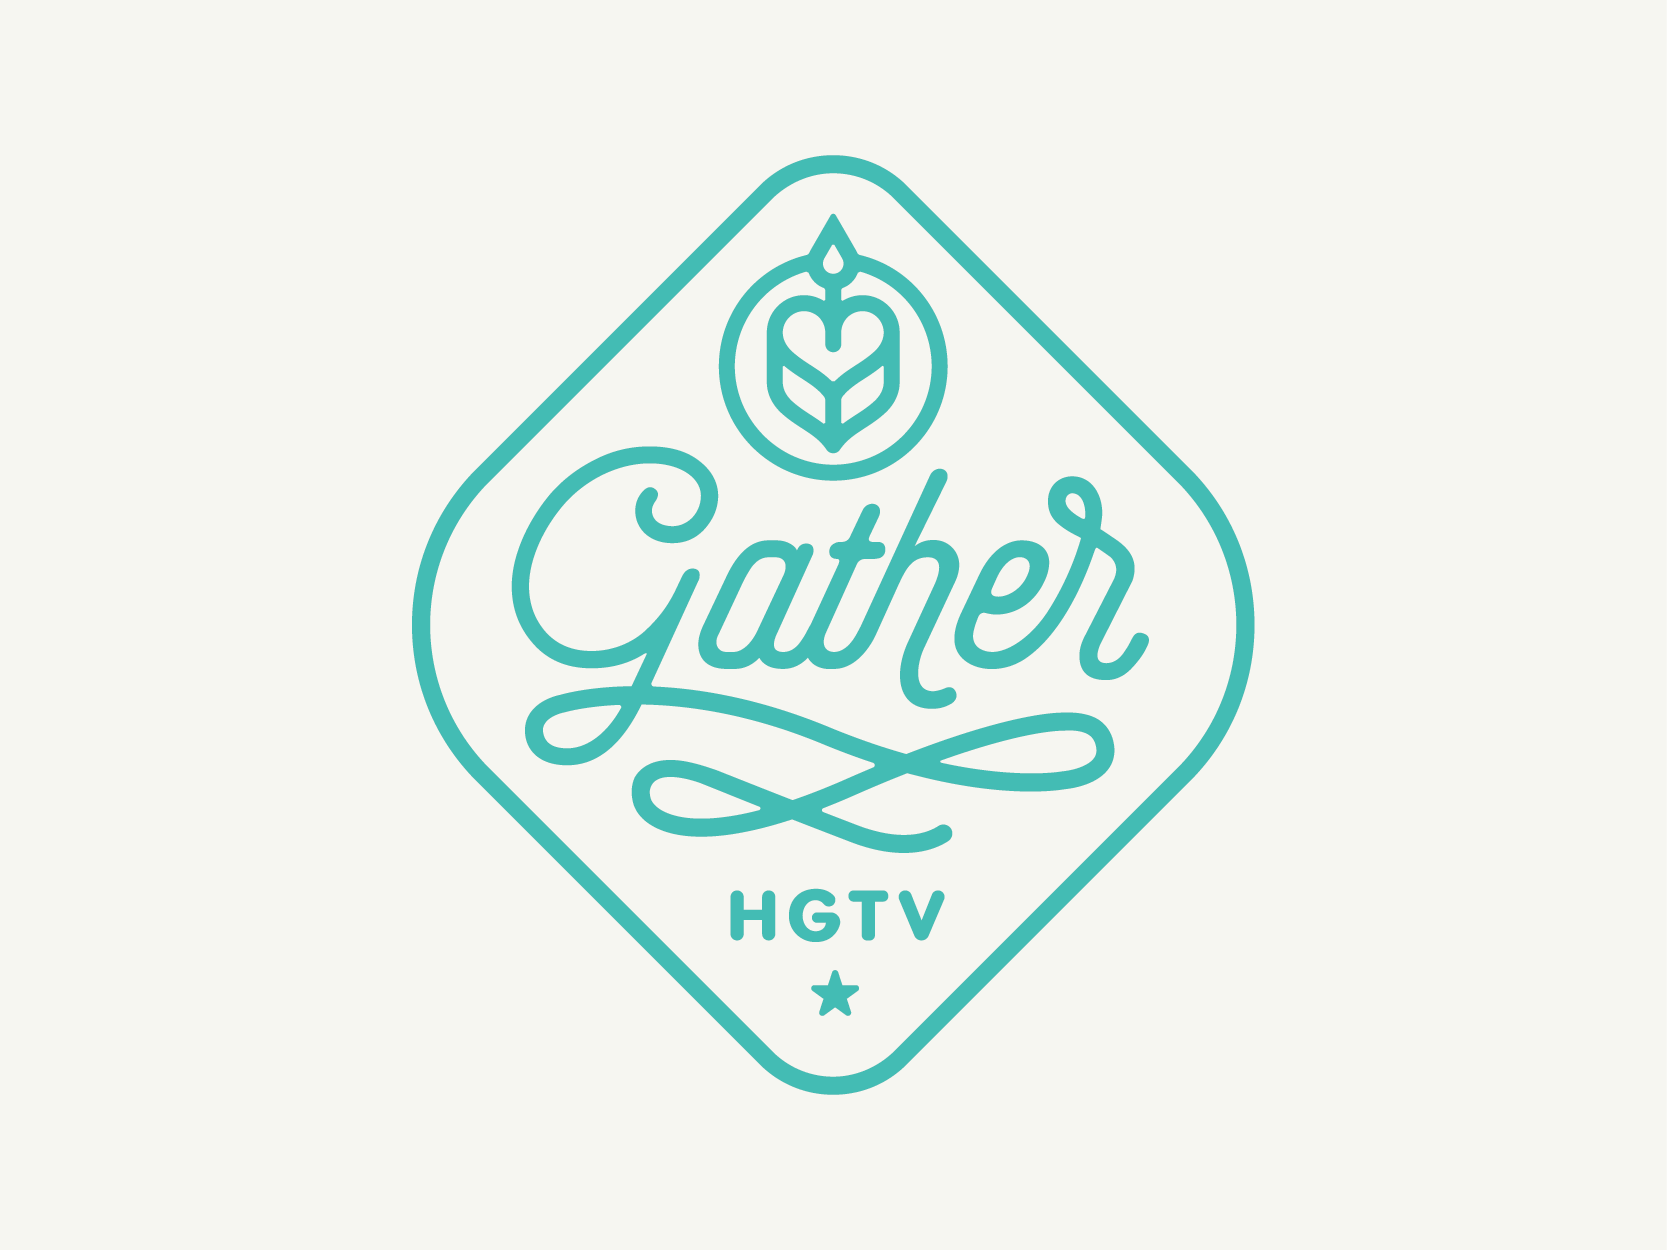 hgtv_gather_logo-01.png